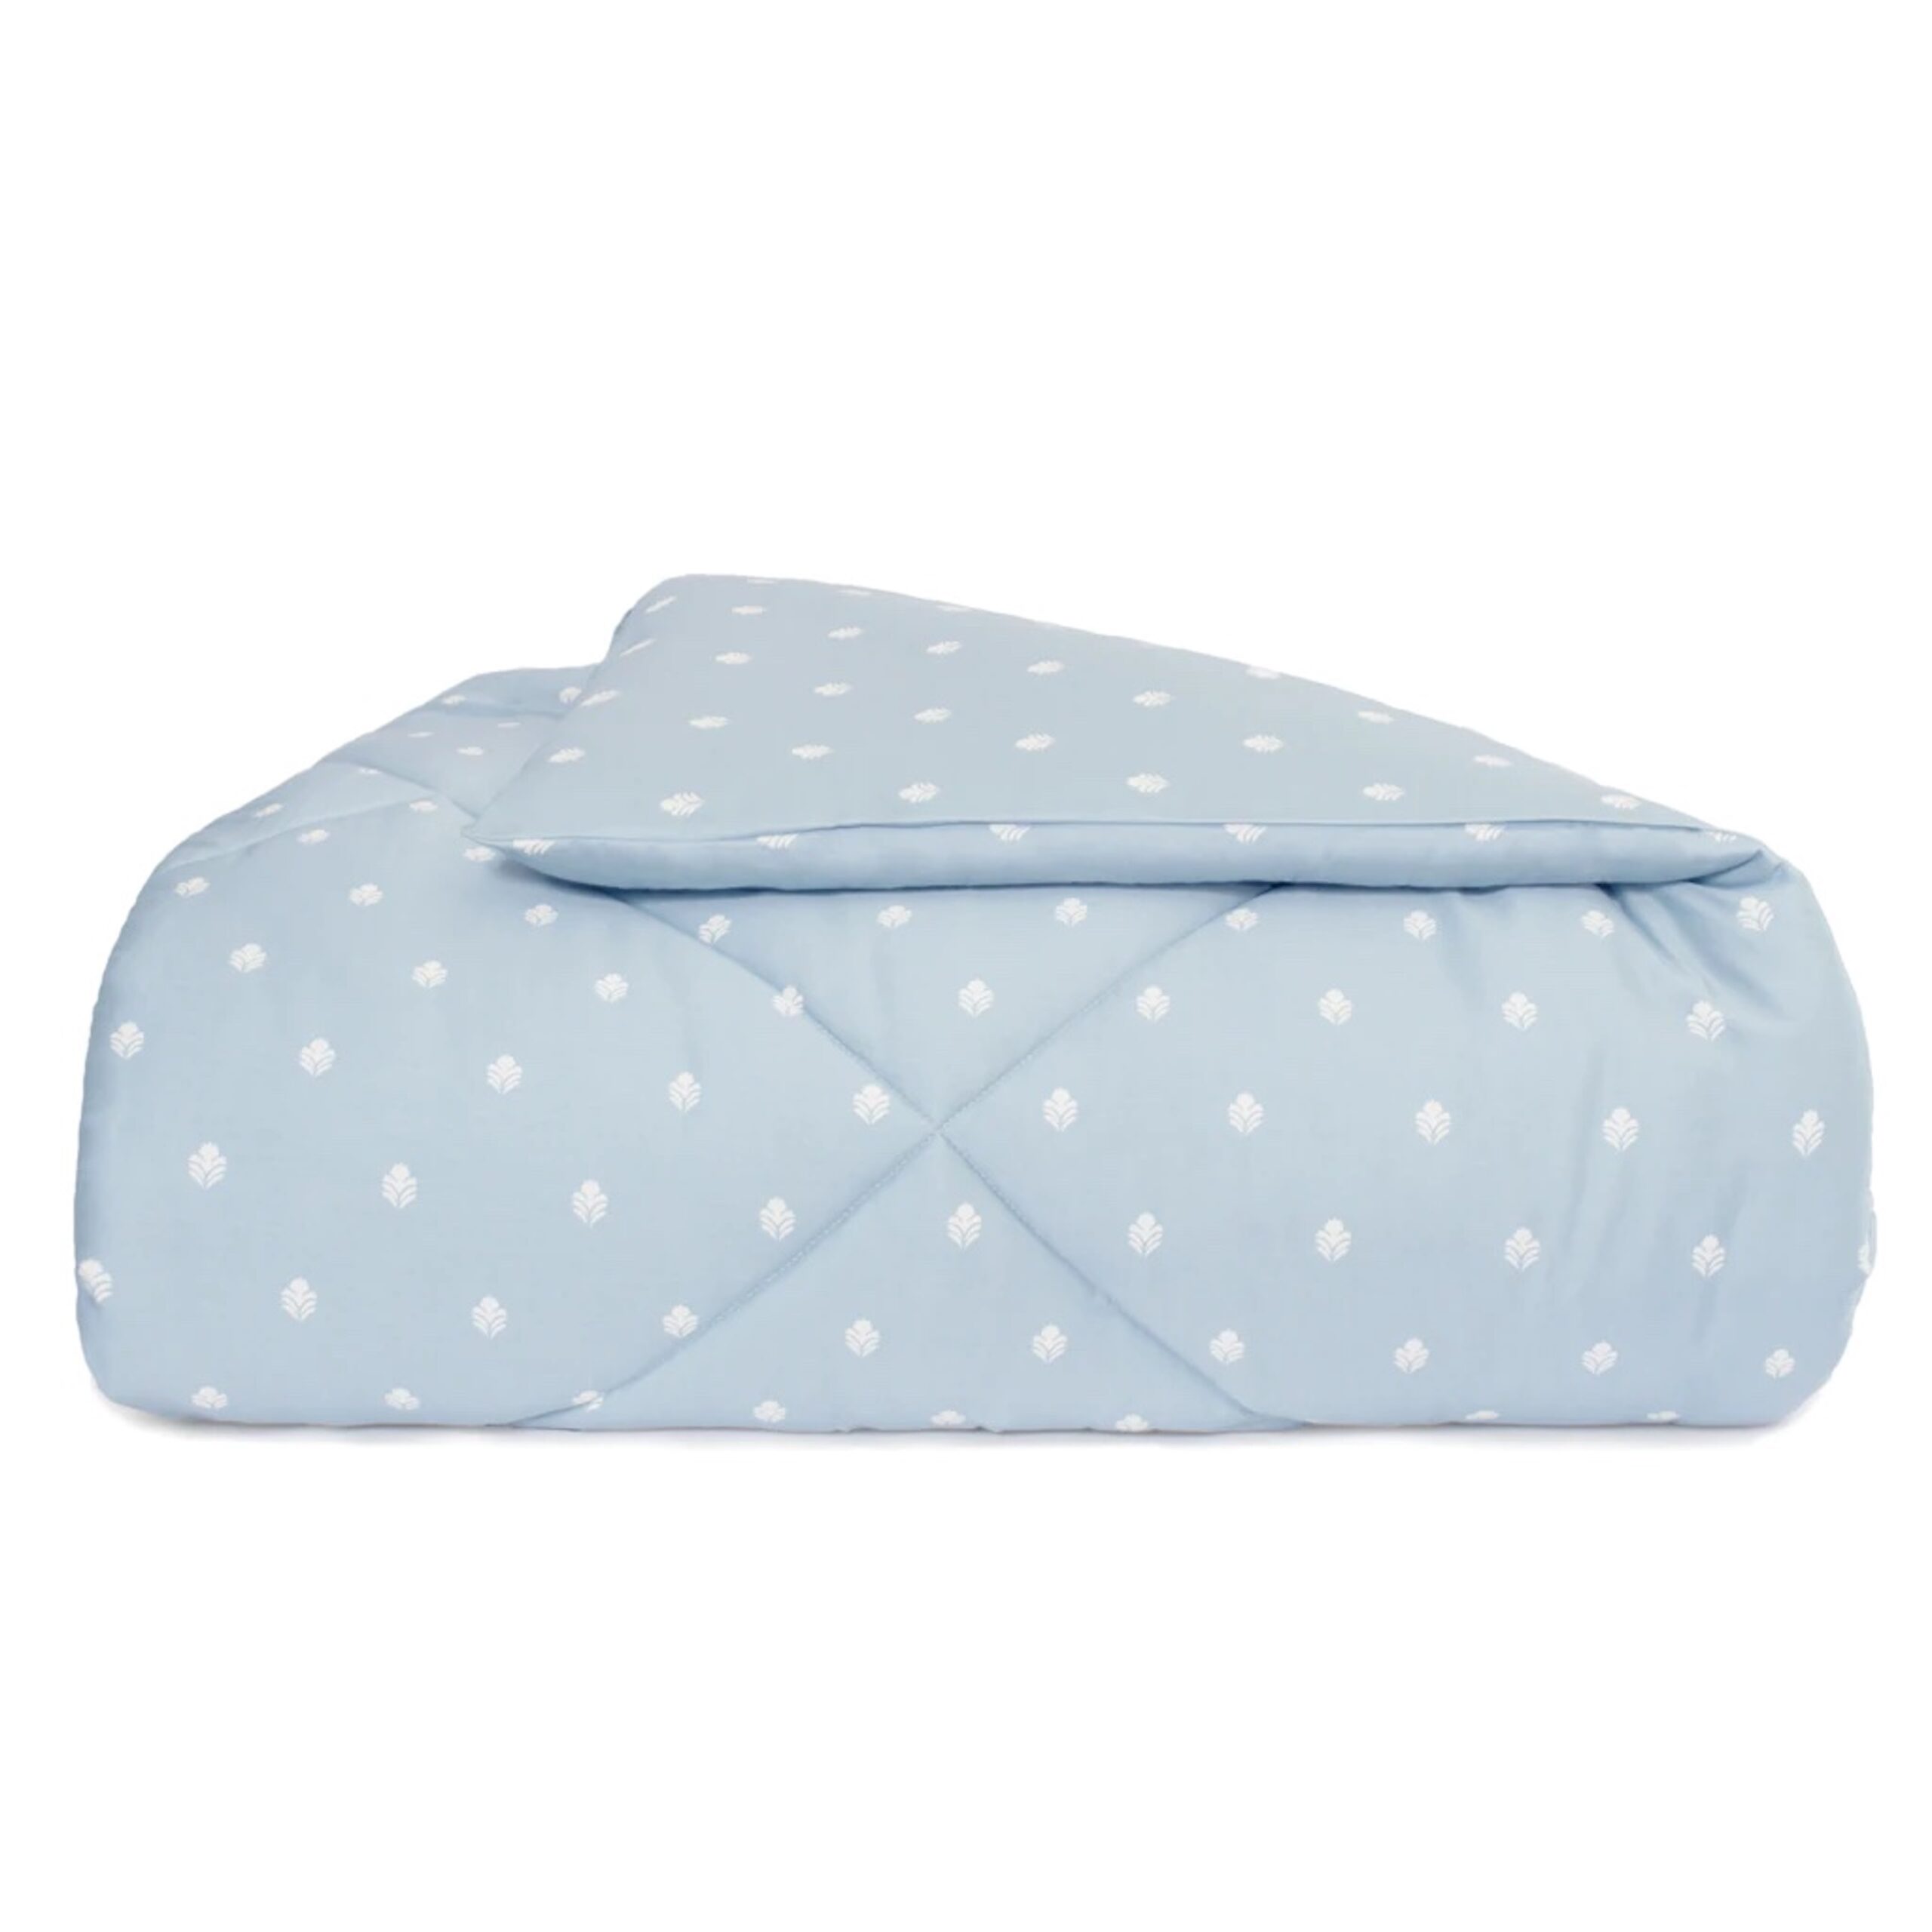 box-stich blue comforter